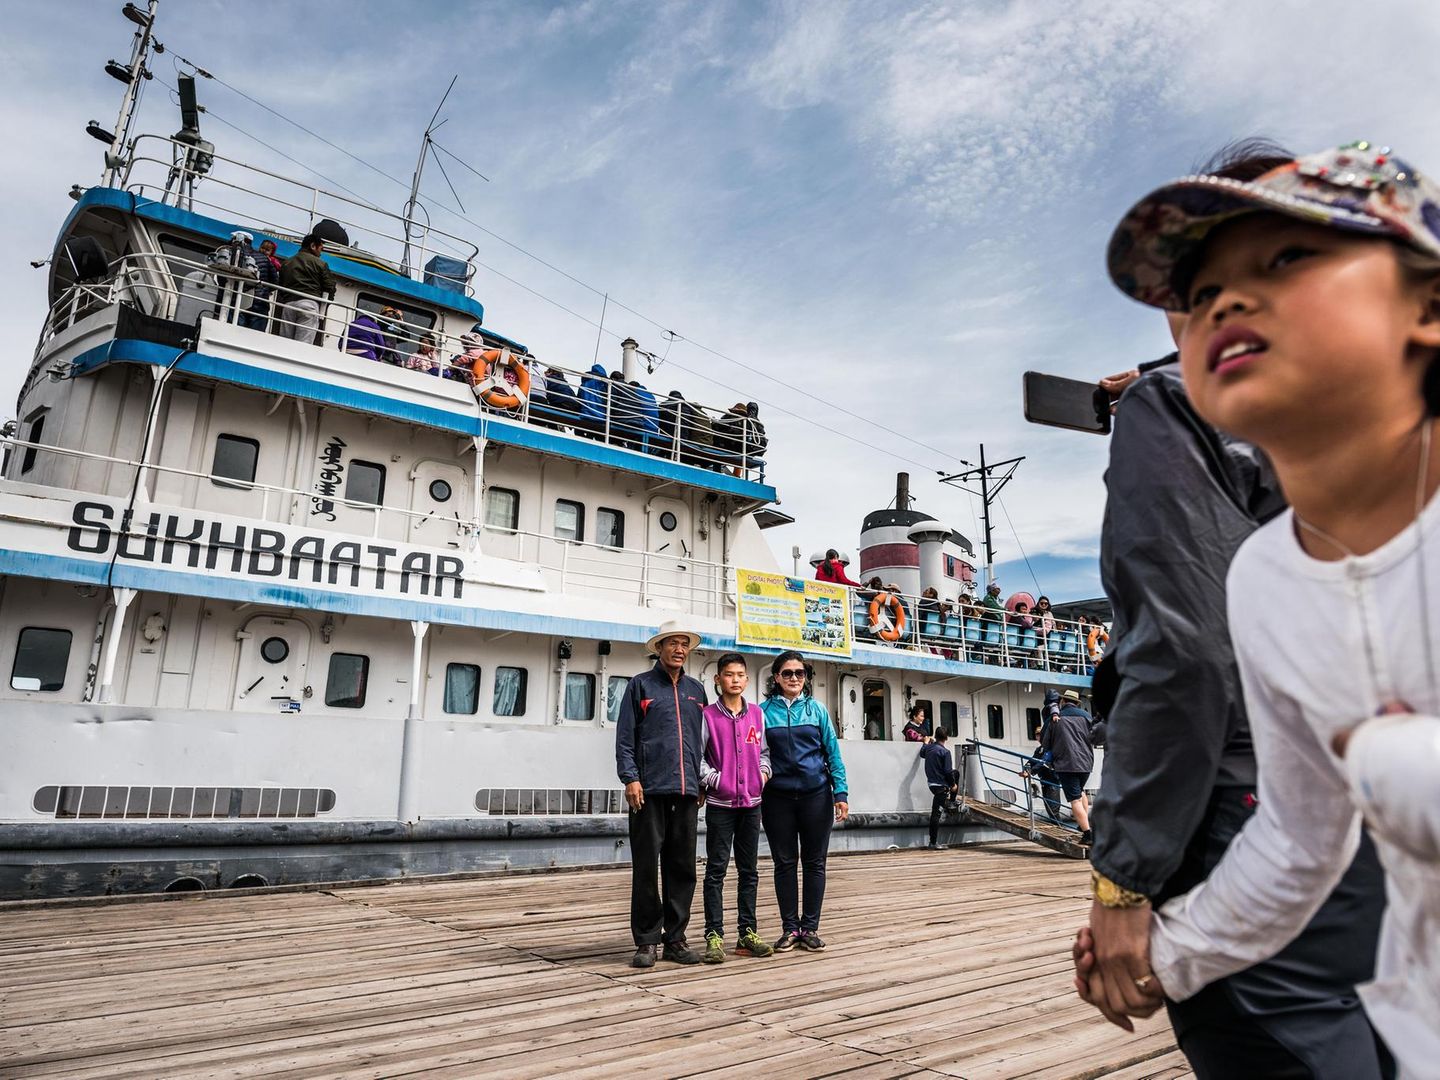 Sukhbaatar: Fahrt auf dem berühmtesten Schiff der Mongolei - [GEO]